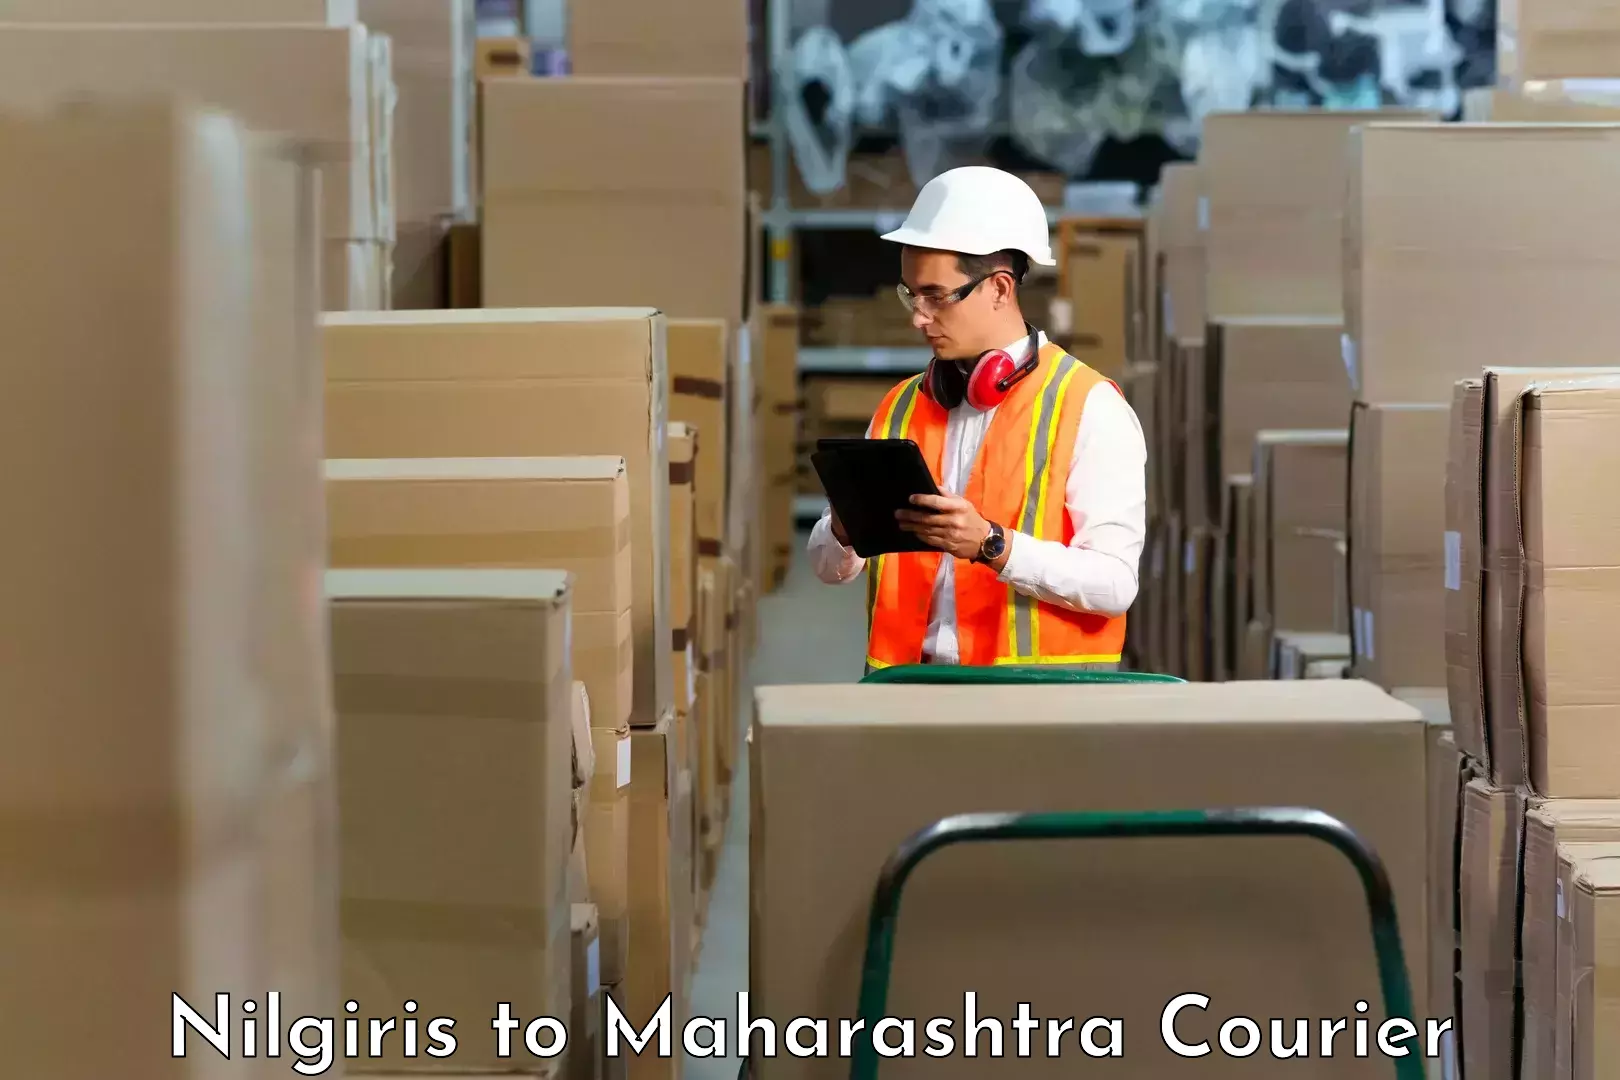 Global shipping solutions Nilgiris to Gadchiroli